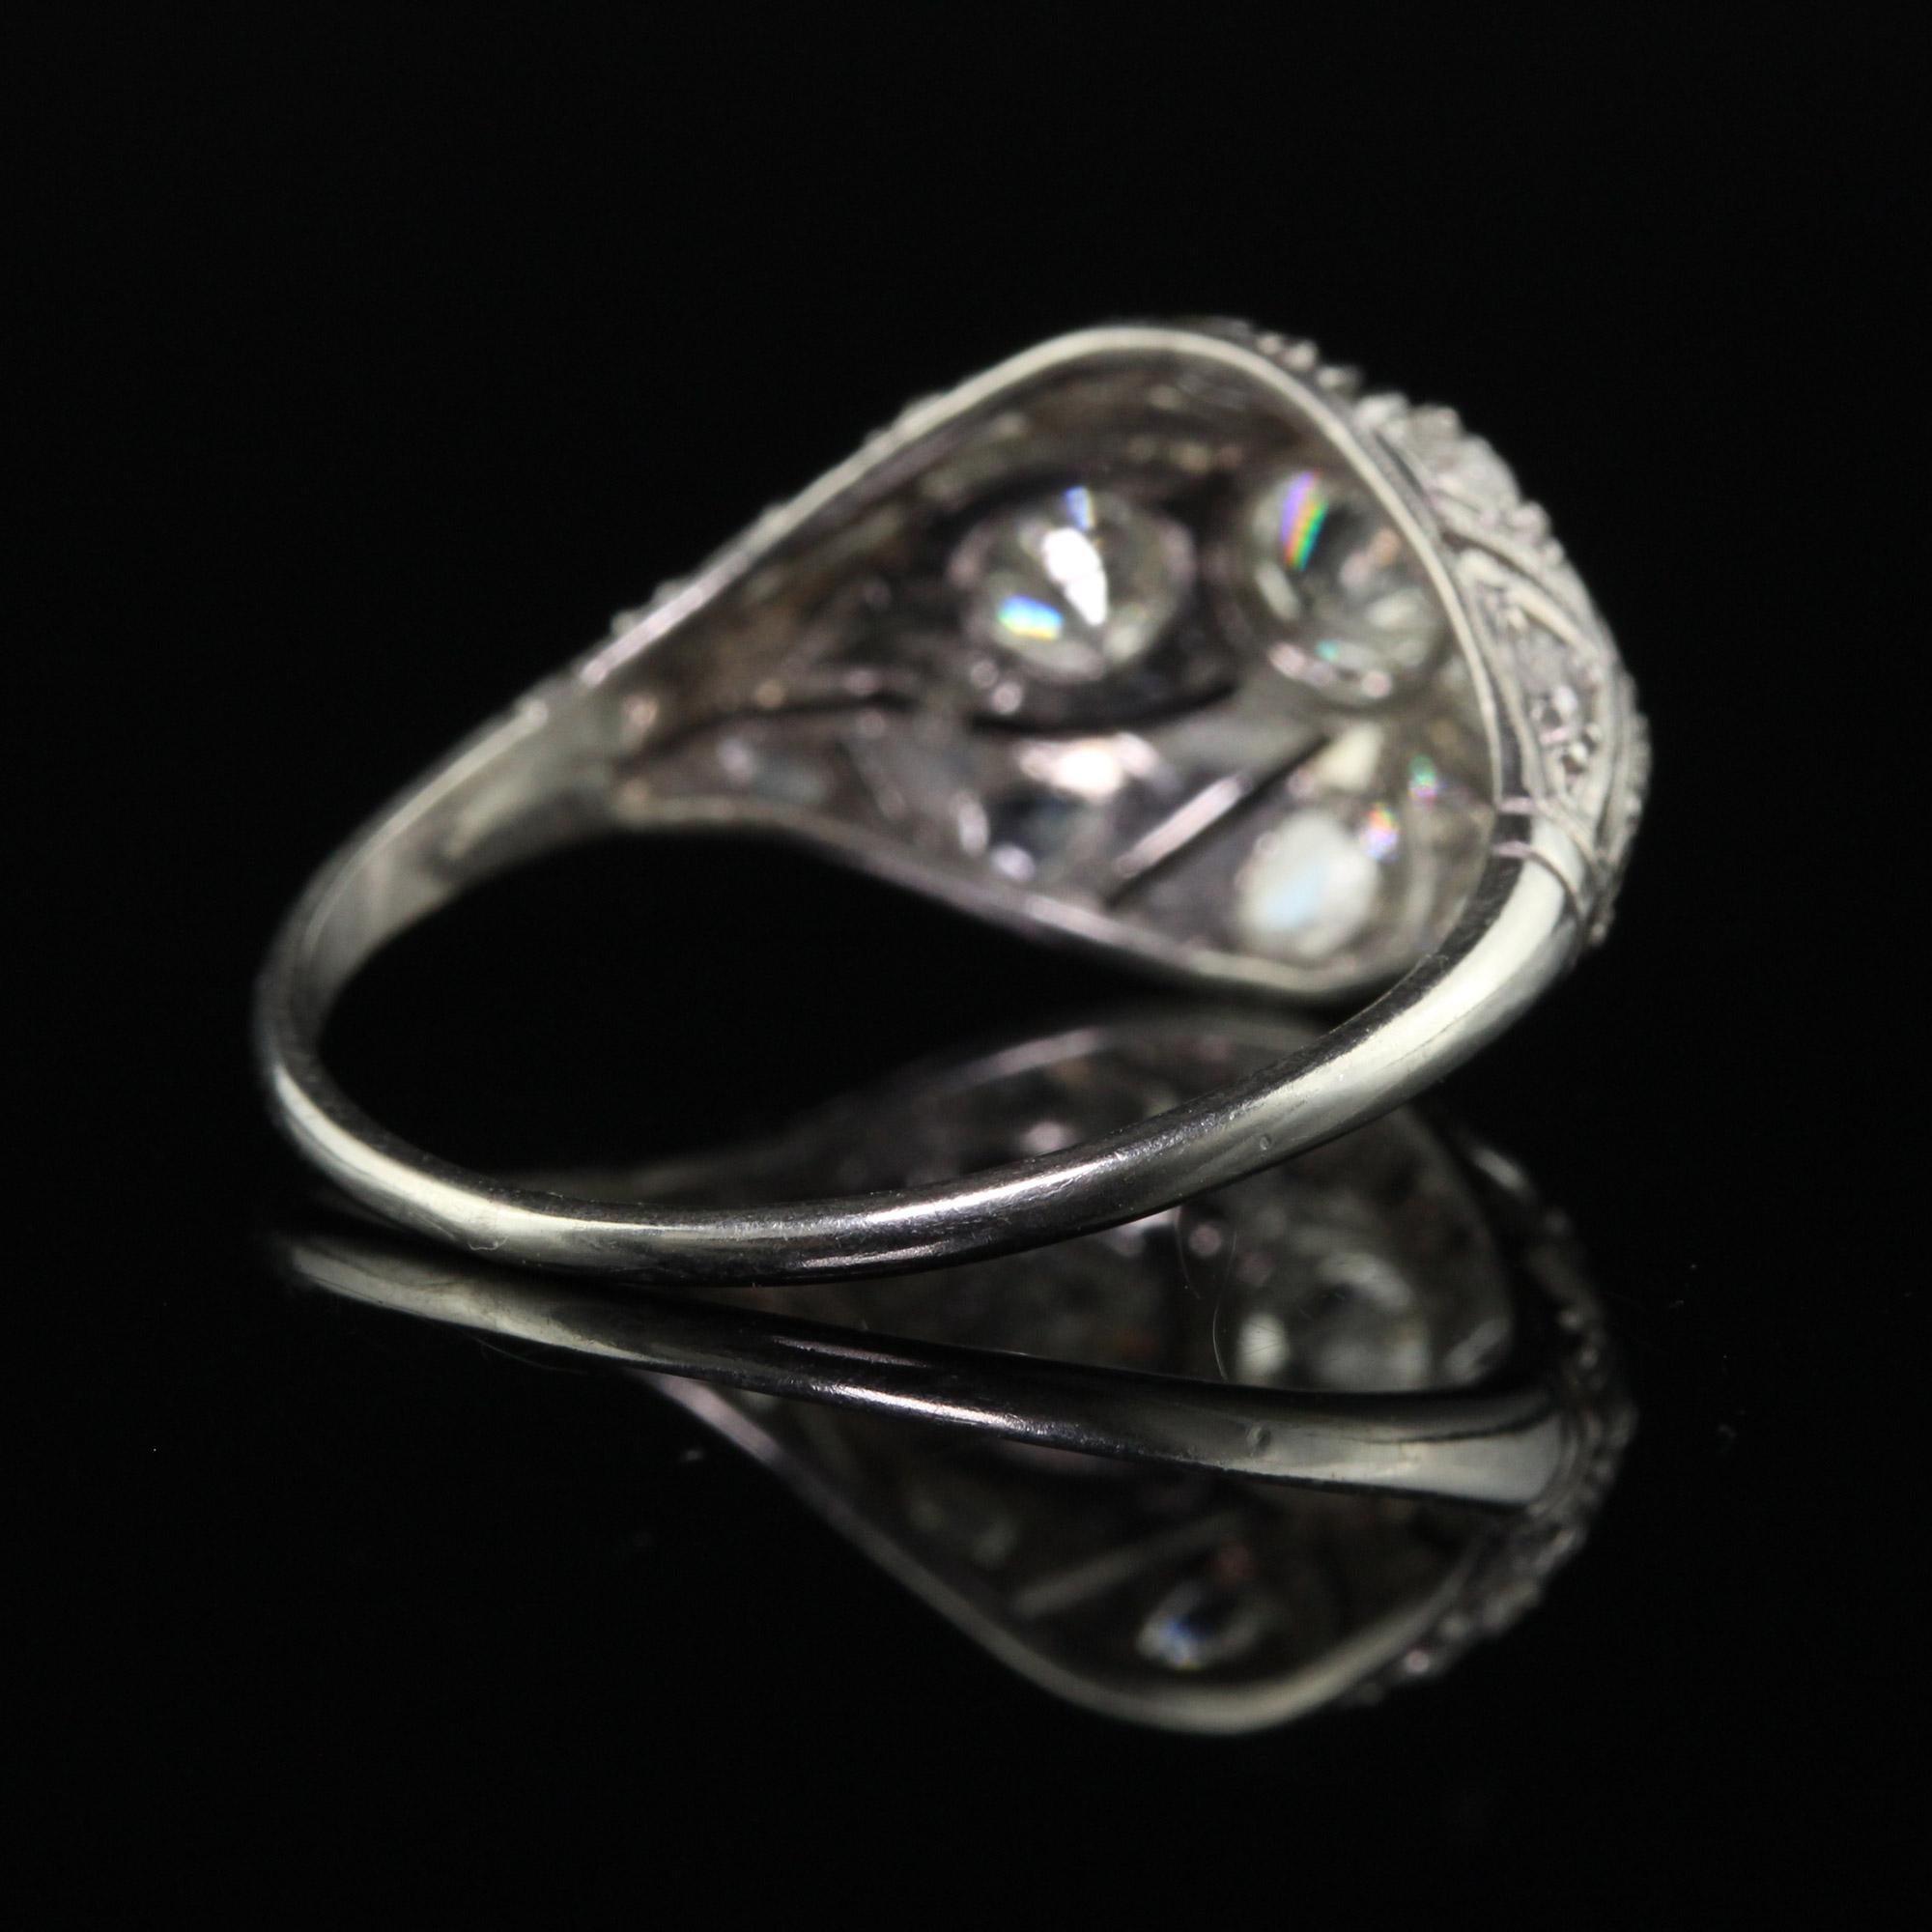 Women's Antique Art Deco Platinum Old European Diamond Filigree Engagement Ring